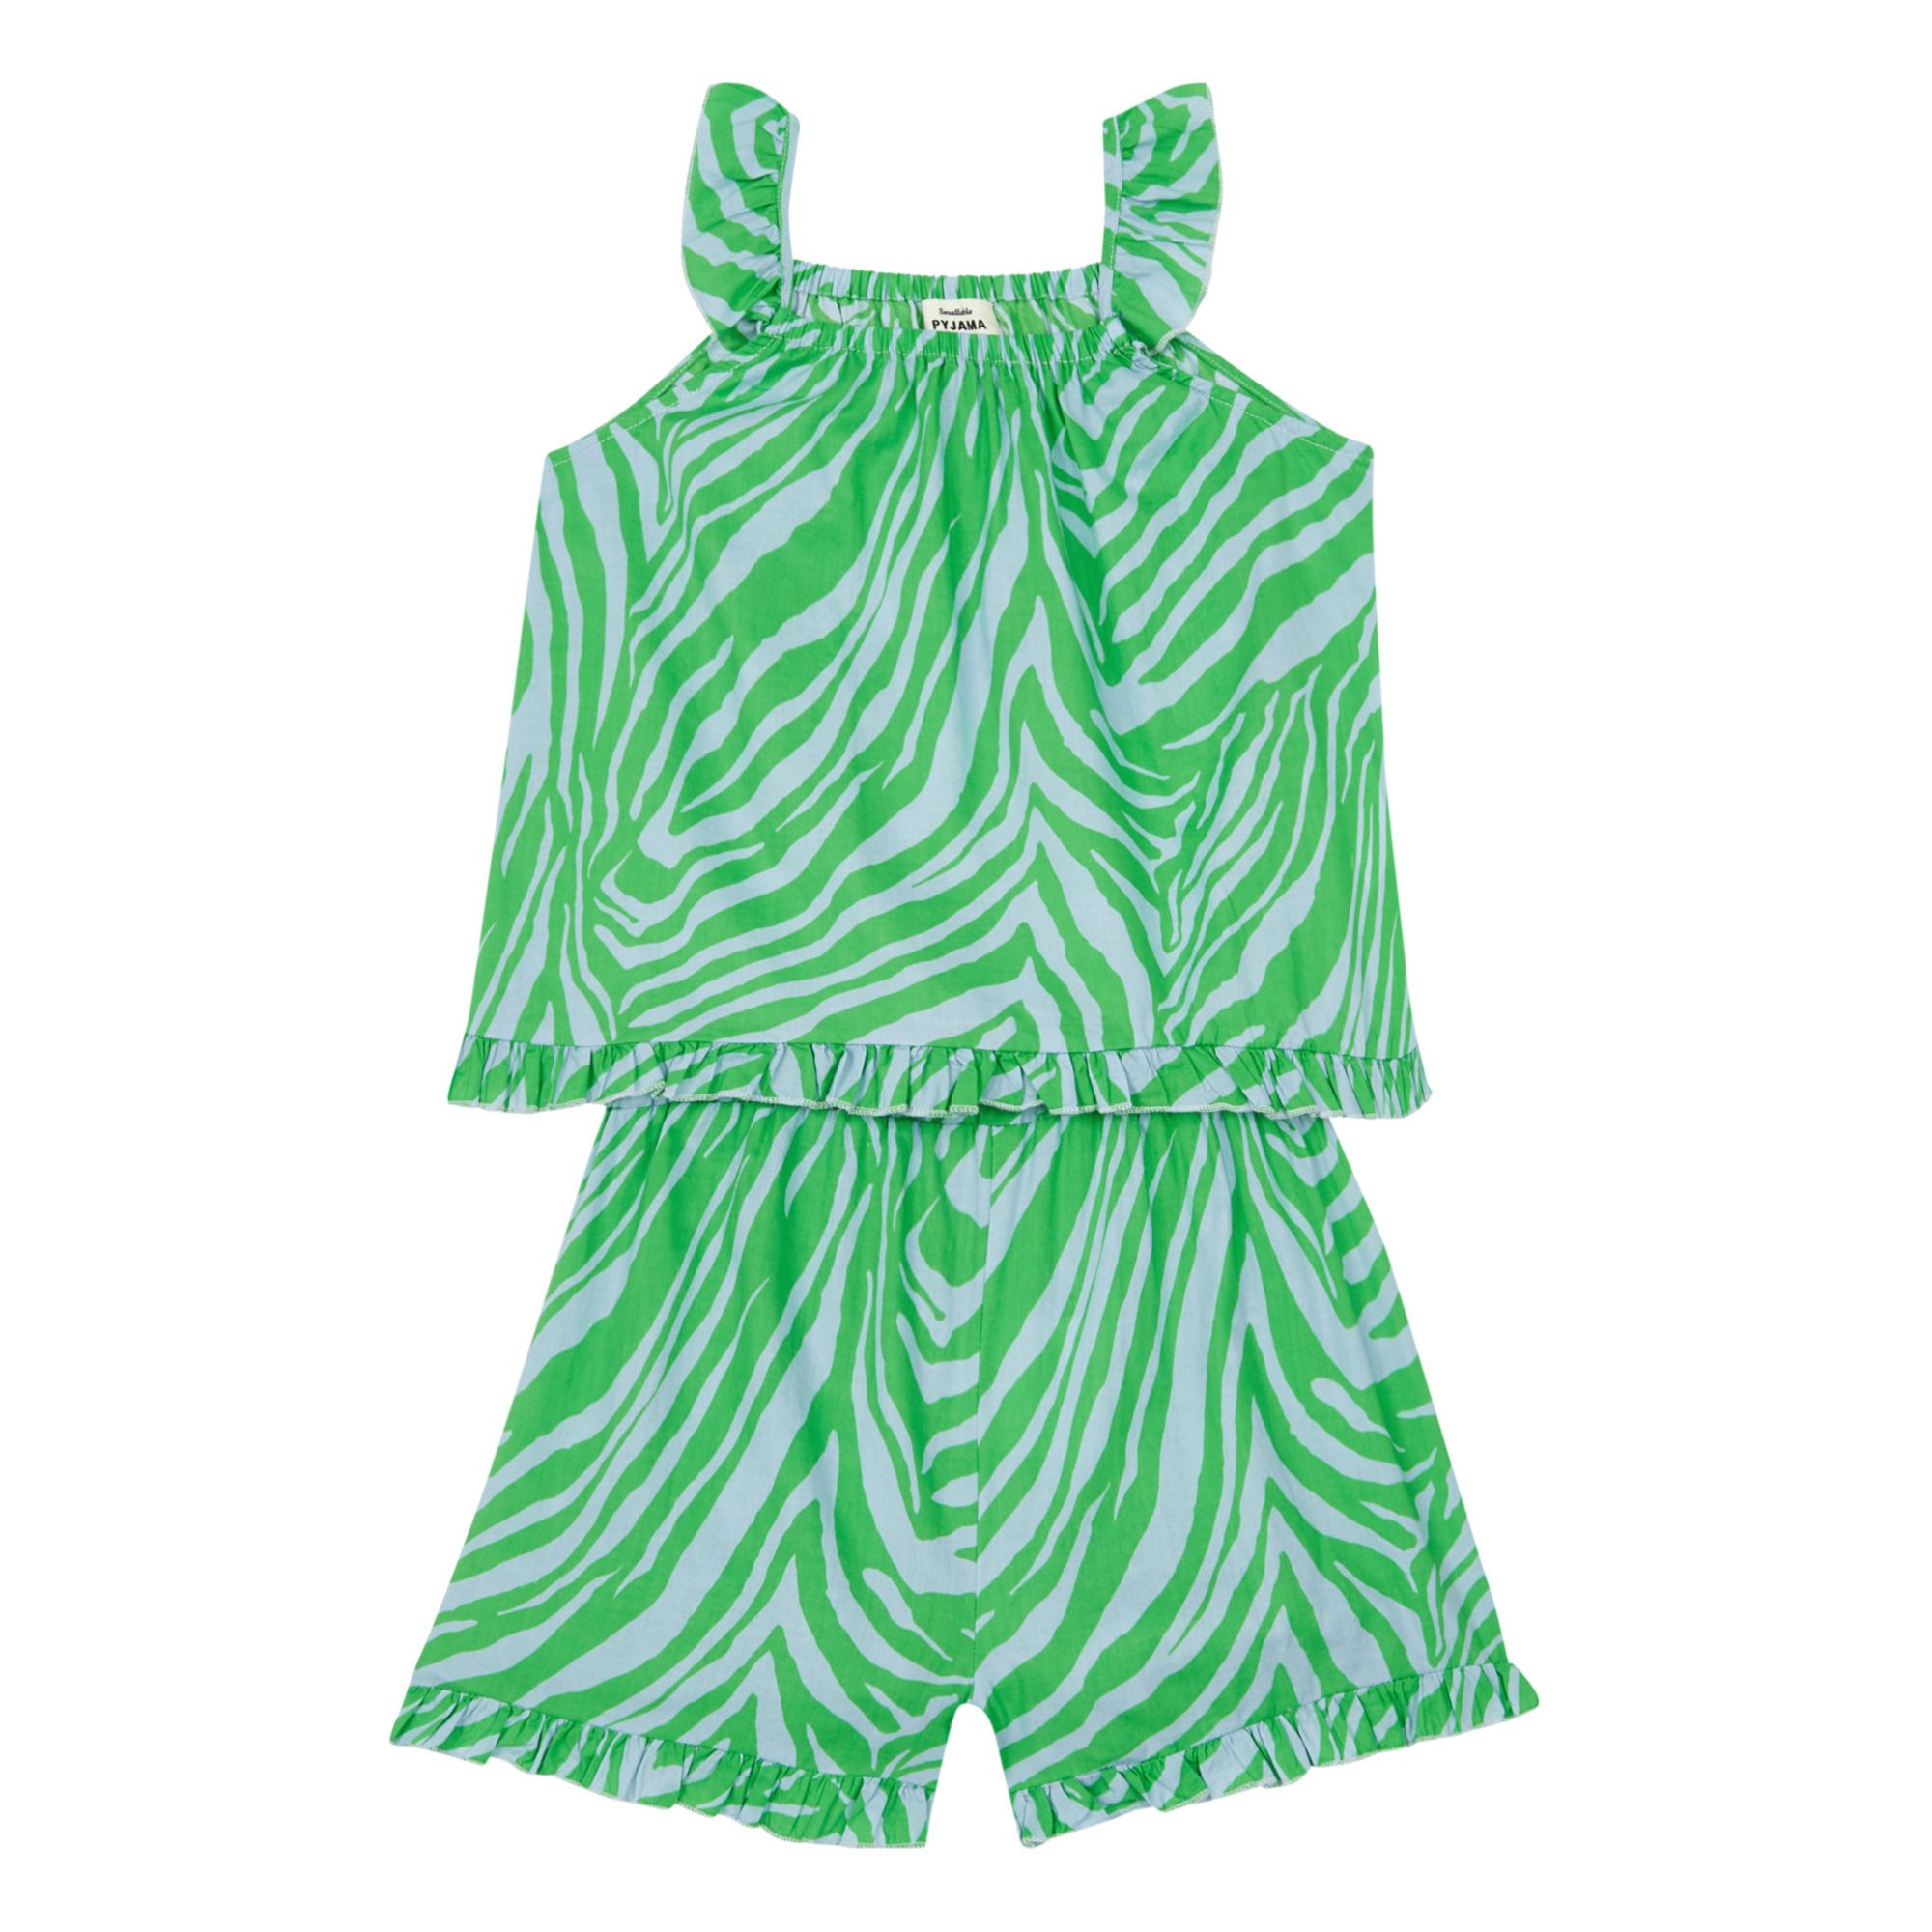 Suzie Winkle - Exclusivité Suzie Winkle x Smallable Pyjama Party – Pyjama Top + Short Julia - Fille - Vert